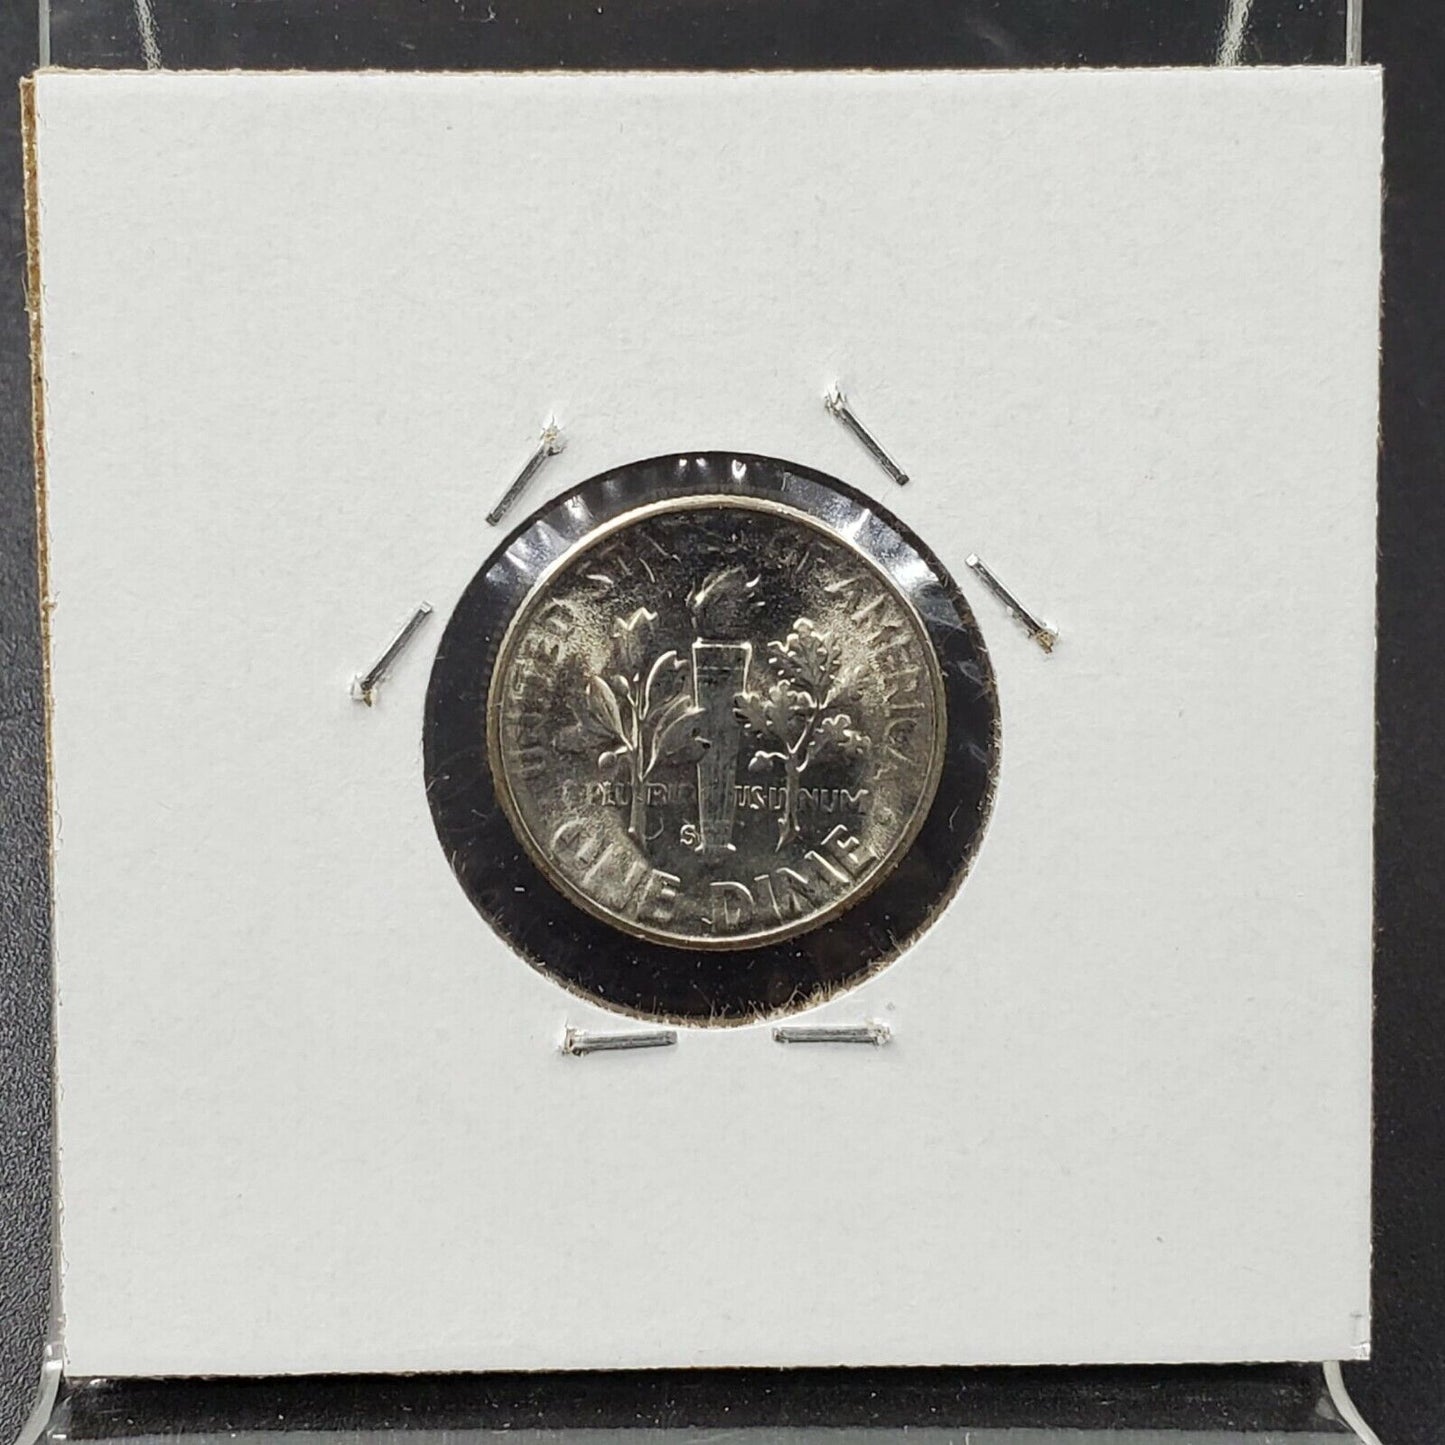 1955 S Roosevelt Silver Dime Coin Struck by Very Worn Die Error Variety